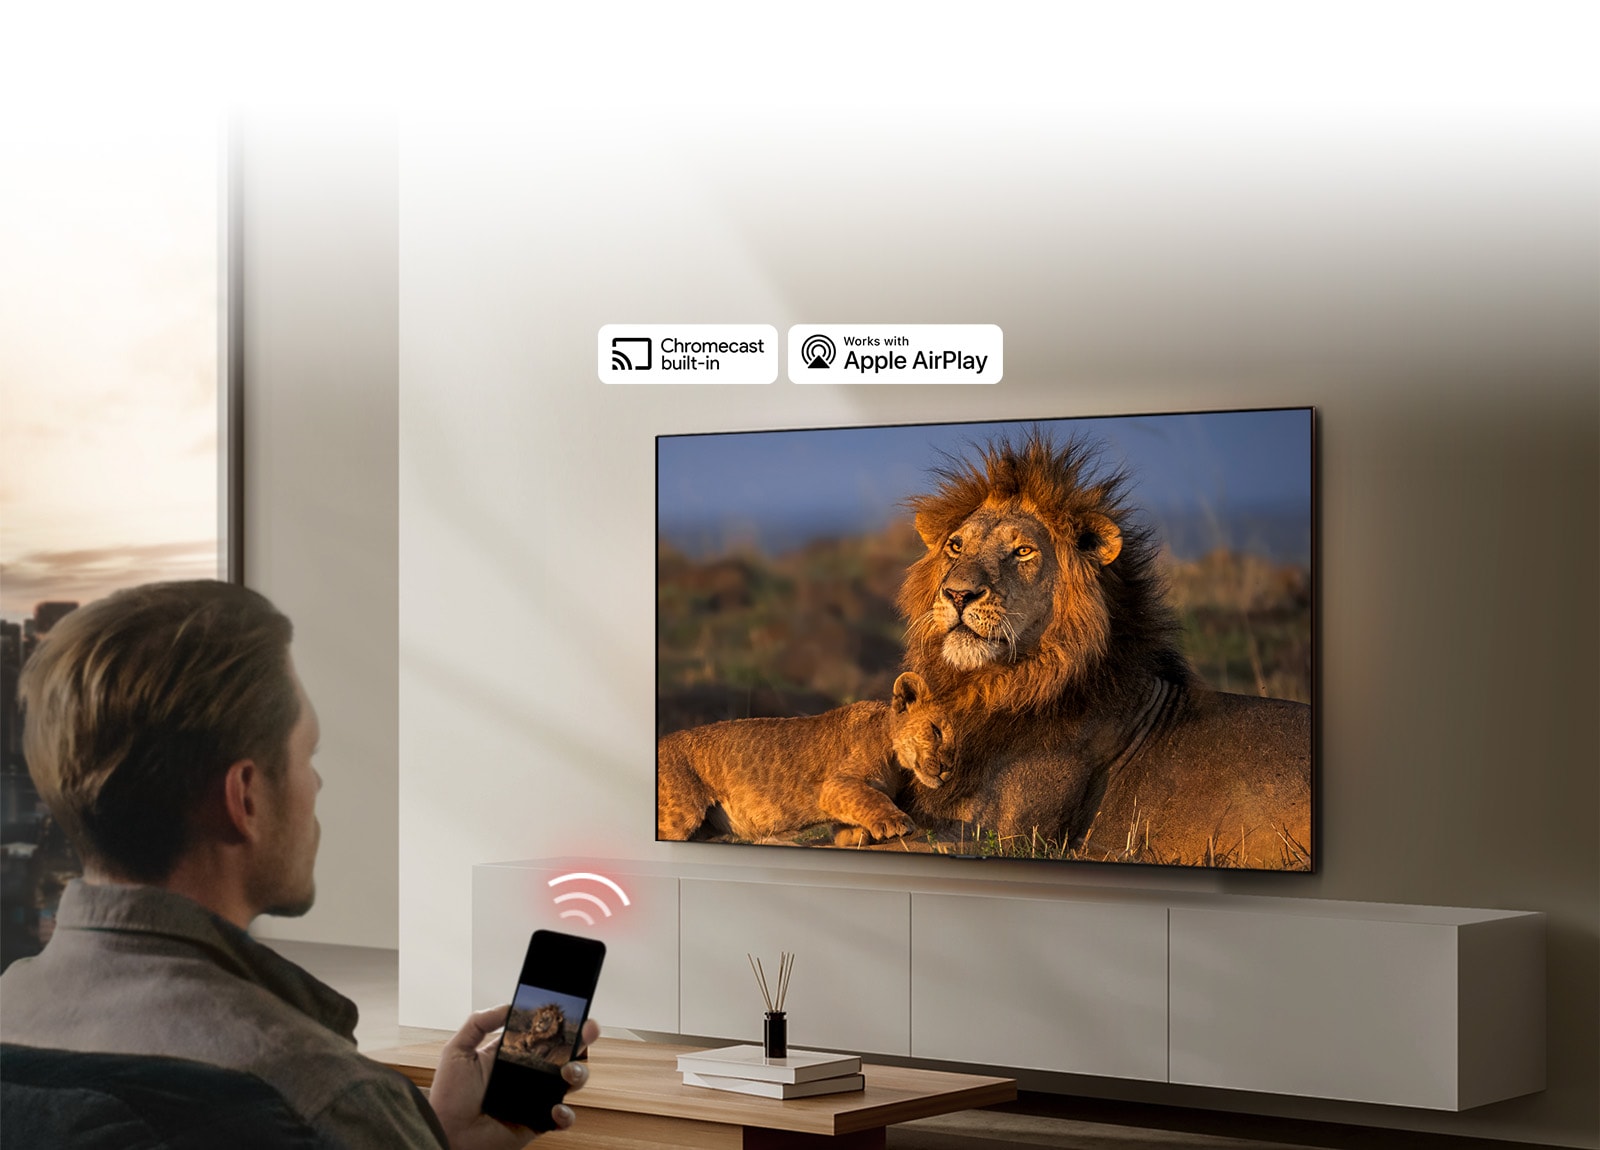 Egy nappaliban a falra szerelt LG TV egy oroszlánt és egy oroszlánkölyköt jelenít meg. Az előtérben egy férfi ül, kezében okostelefonnal, amelyen az oroszlánok ugyanezen képe látható. Közvetlenül a tévé felé mutató okostelefon felett három neonvörös színű, ívelt sávokból álló grafika látható.